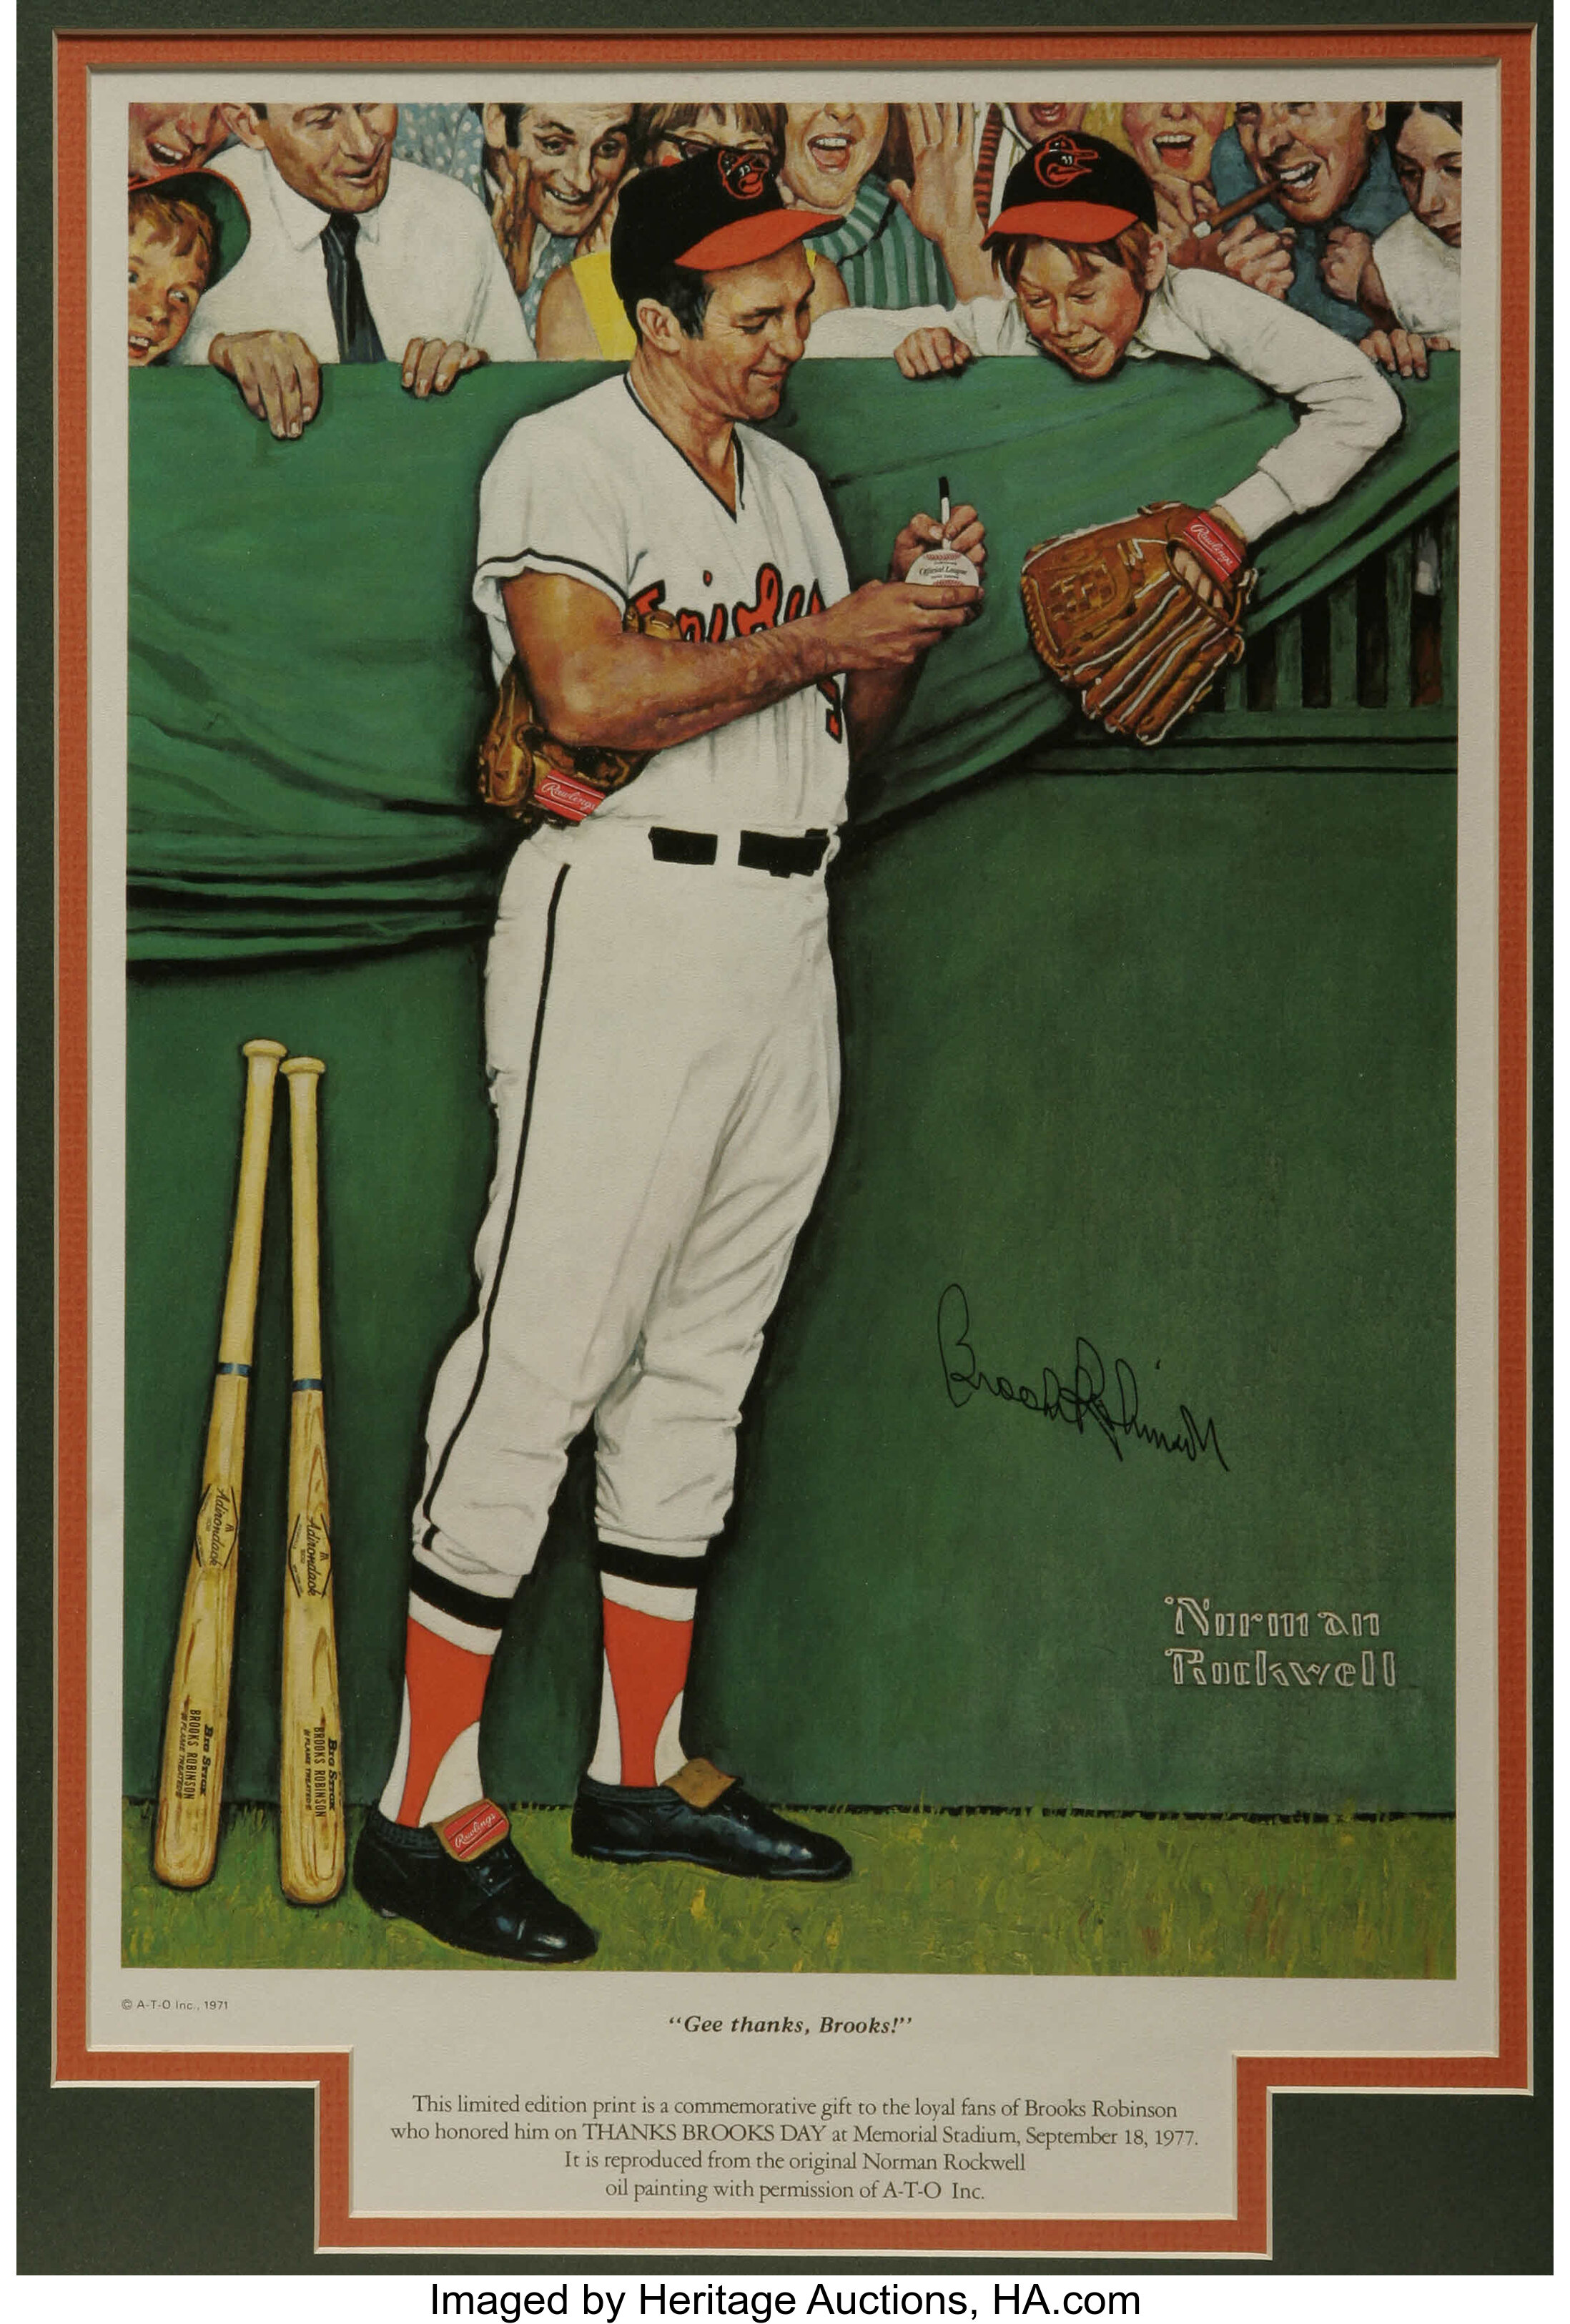 Brooks Robinson 2 - Baseball Player - Autographed Poster Print